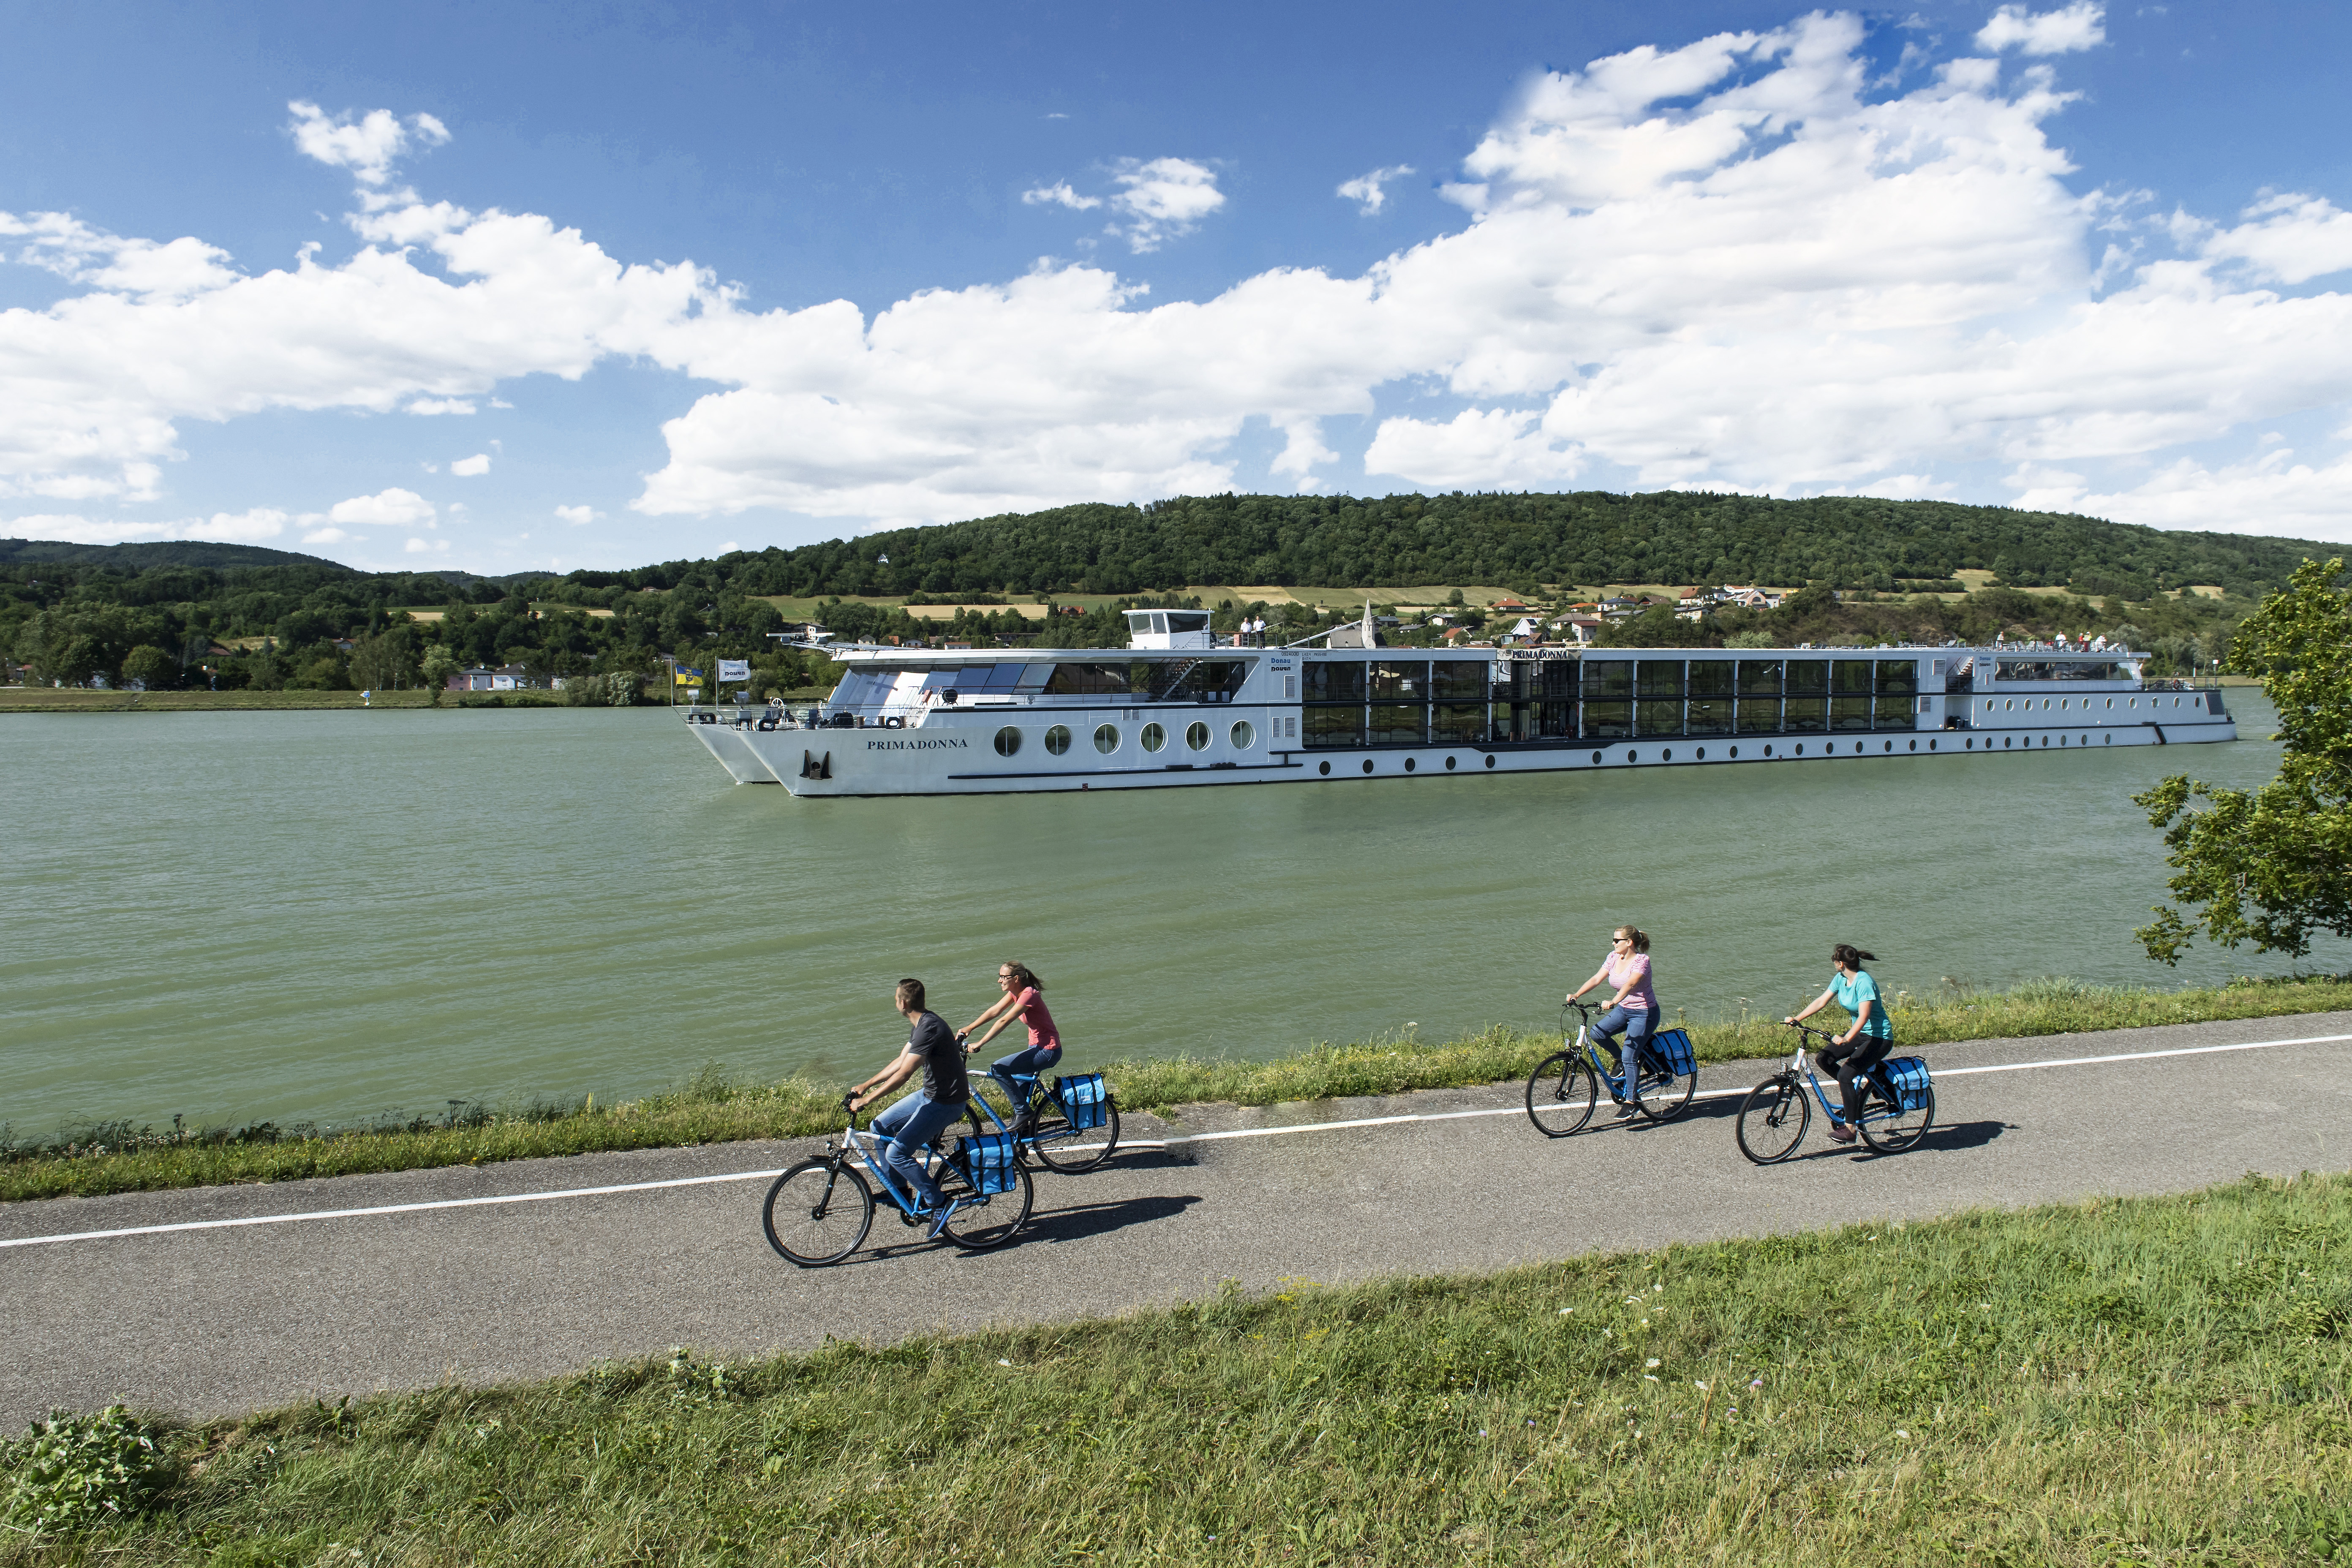 Gutschein für eine Radkreuzfahrt auf der Donau für 2 Personen